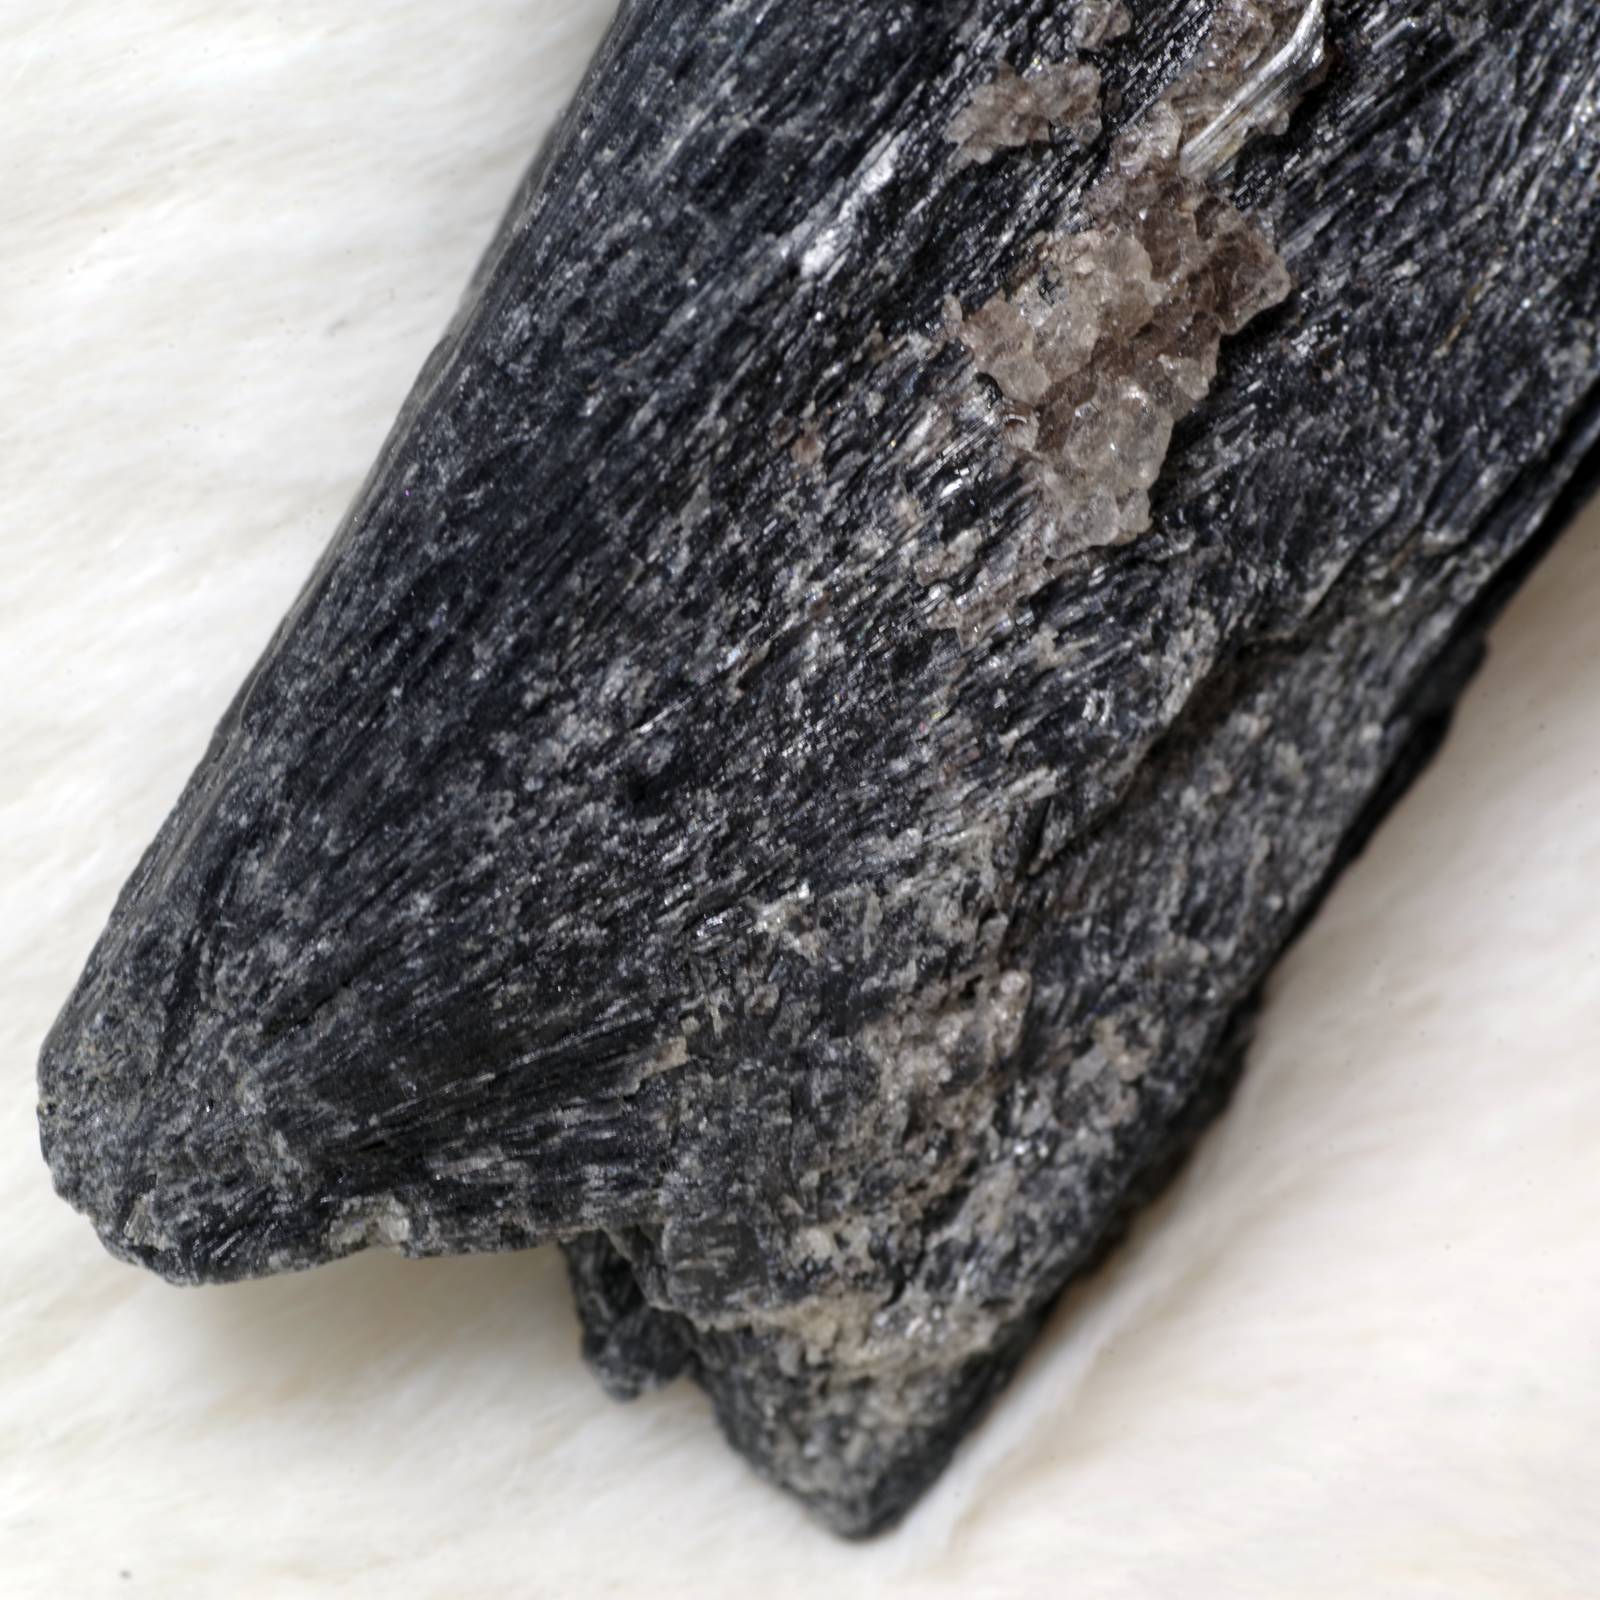 カイヤナイト 藍晶石 黒 ブラジル産3 Black Kyanite Brazil 原石 写真 ...